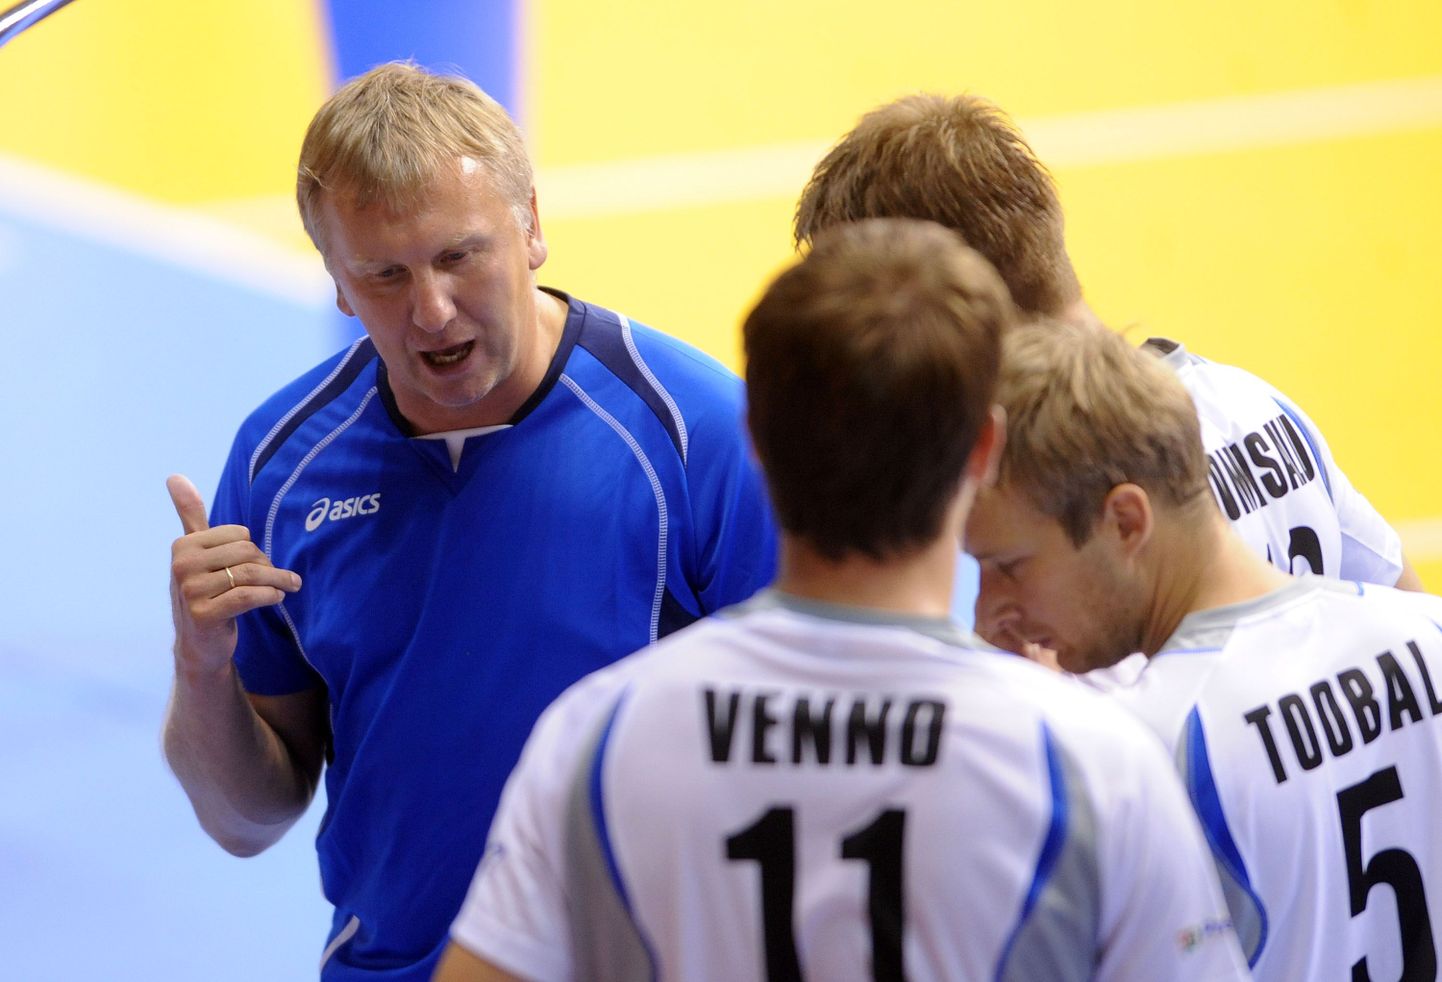 Eesti võrkpallikoondise peatreener Avo Keel (sinises) meestele nõuandeid jagamas.